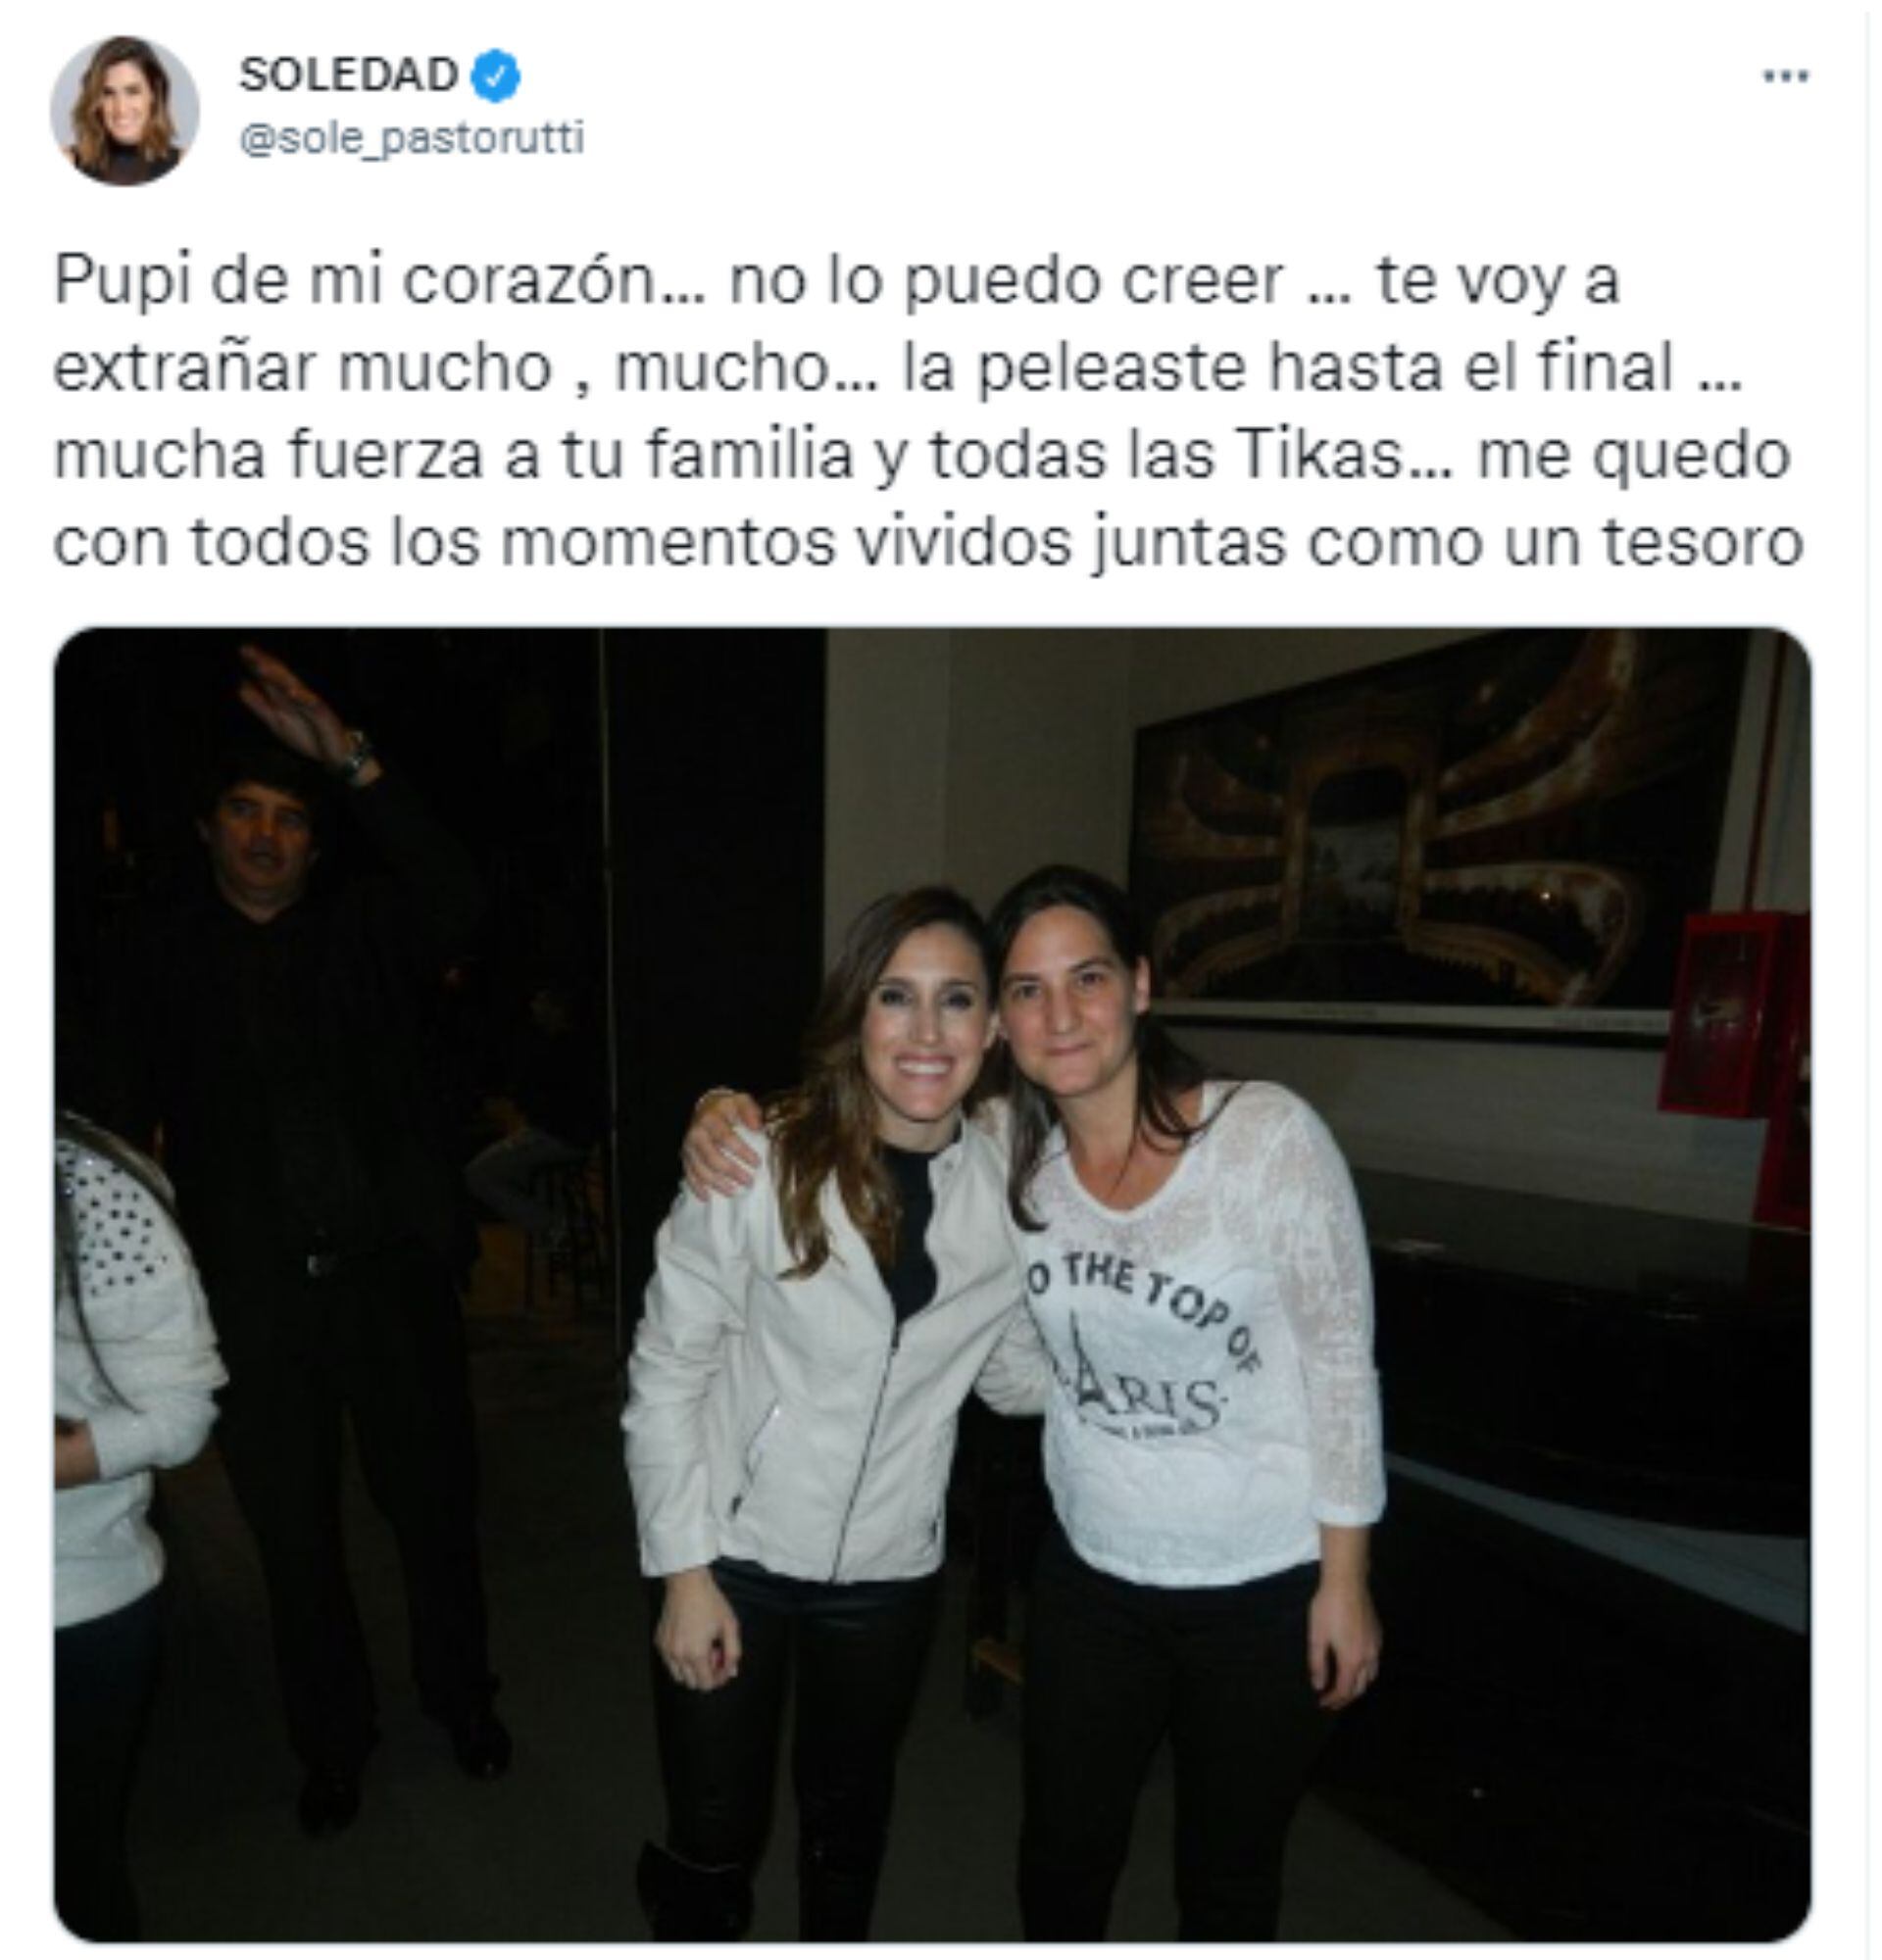 El mensaje de Soledad Pastorutti tras la muerte de una fan